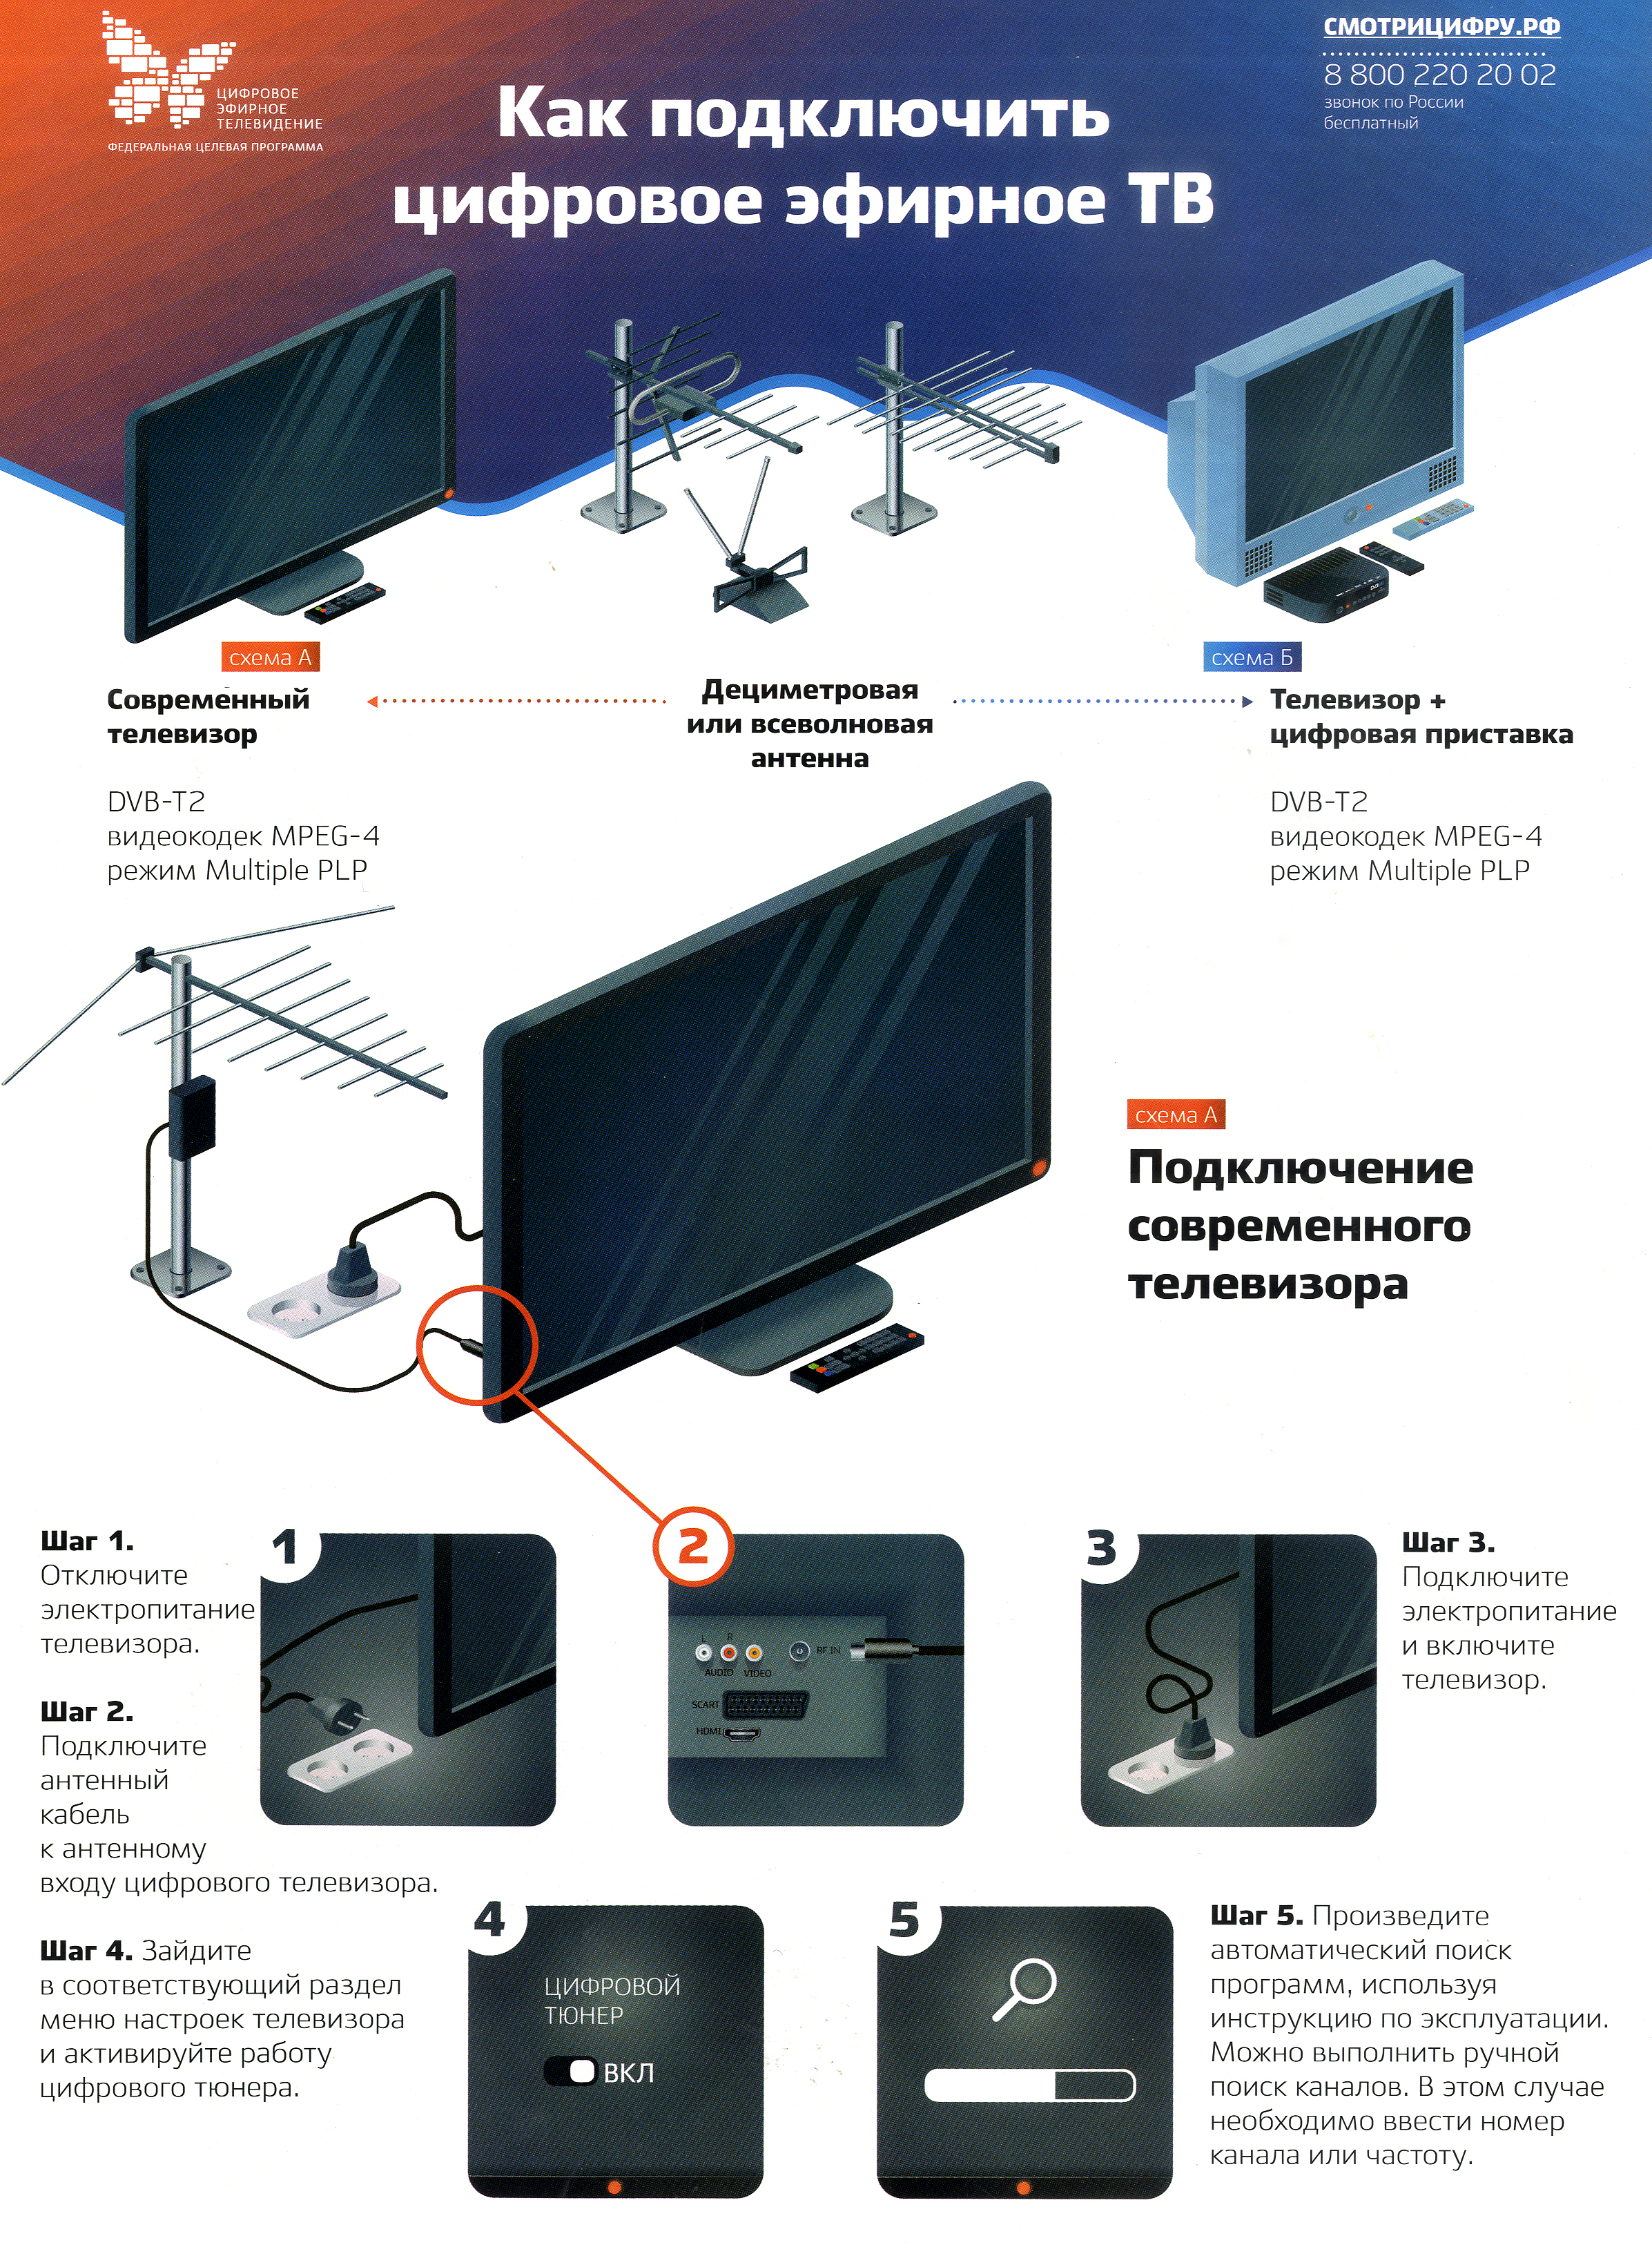 Как подключить и настроить цифровую приставку к телевизору?